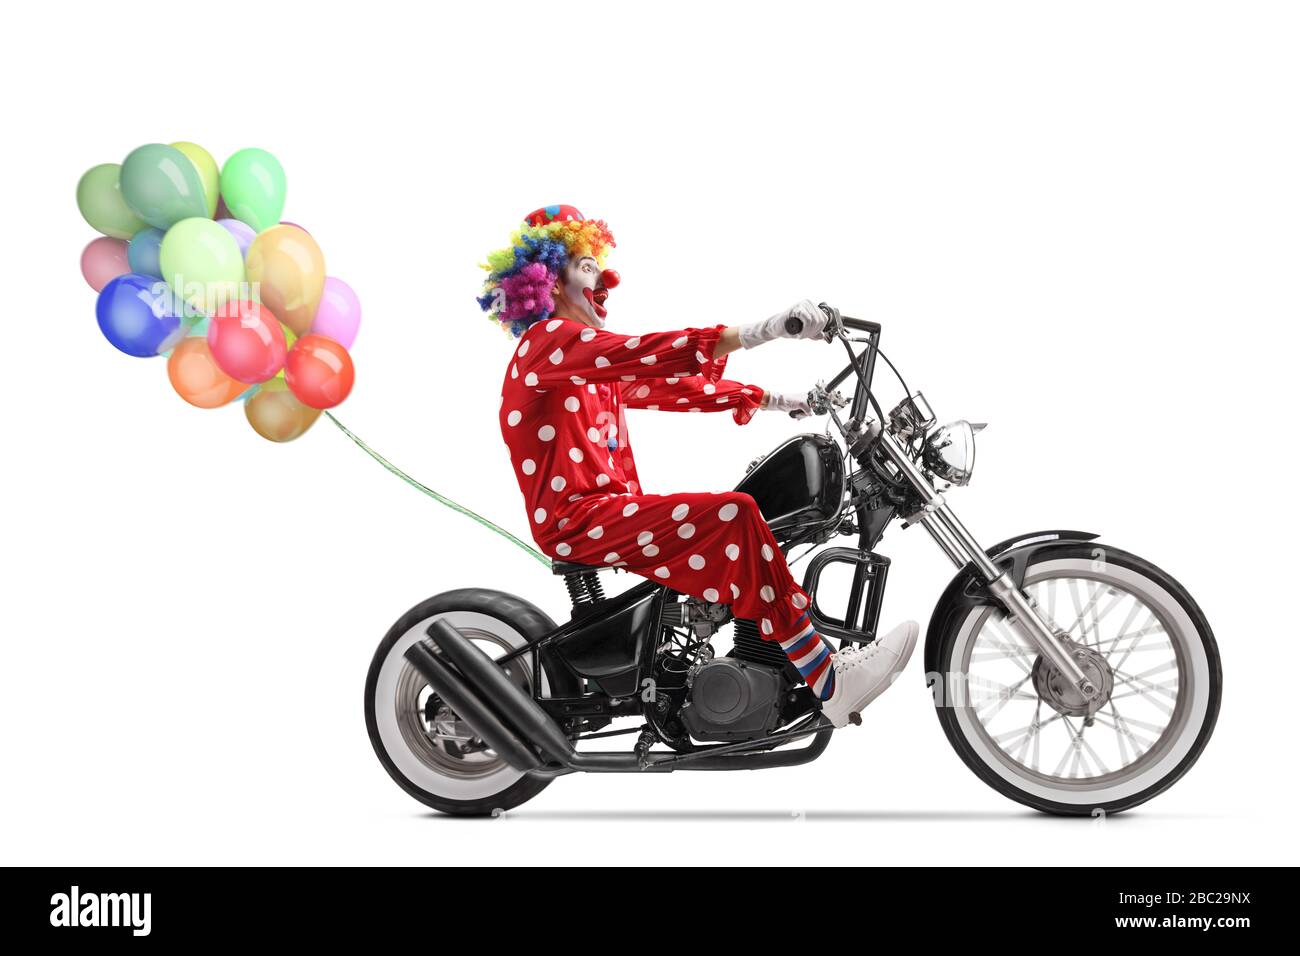 Photo en profil sur toute la longueur d'un clown qui monte sur une moto de broyeur avec un tas de ballons isolés sur fond blanc Banque D'Images